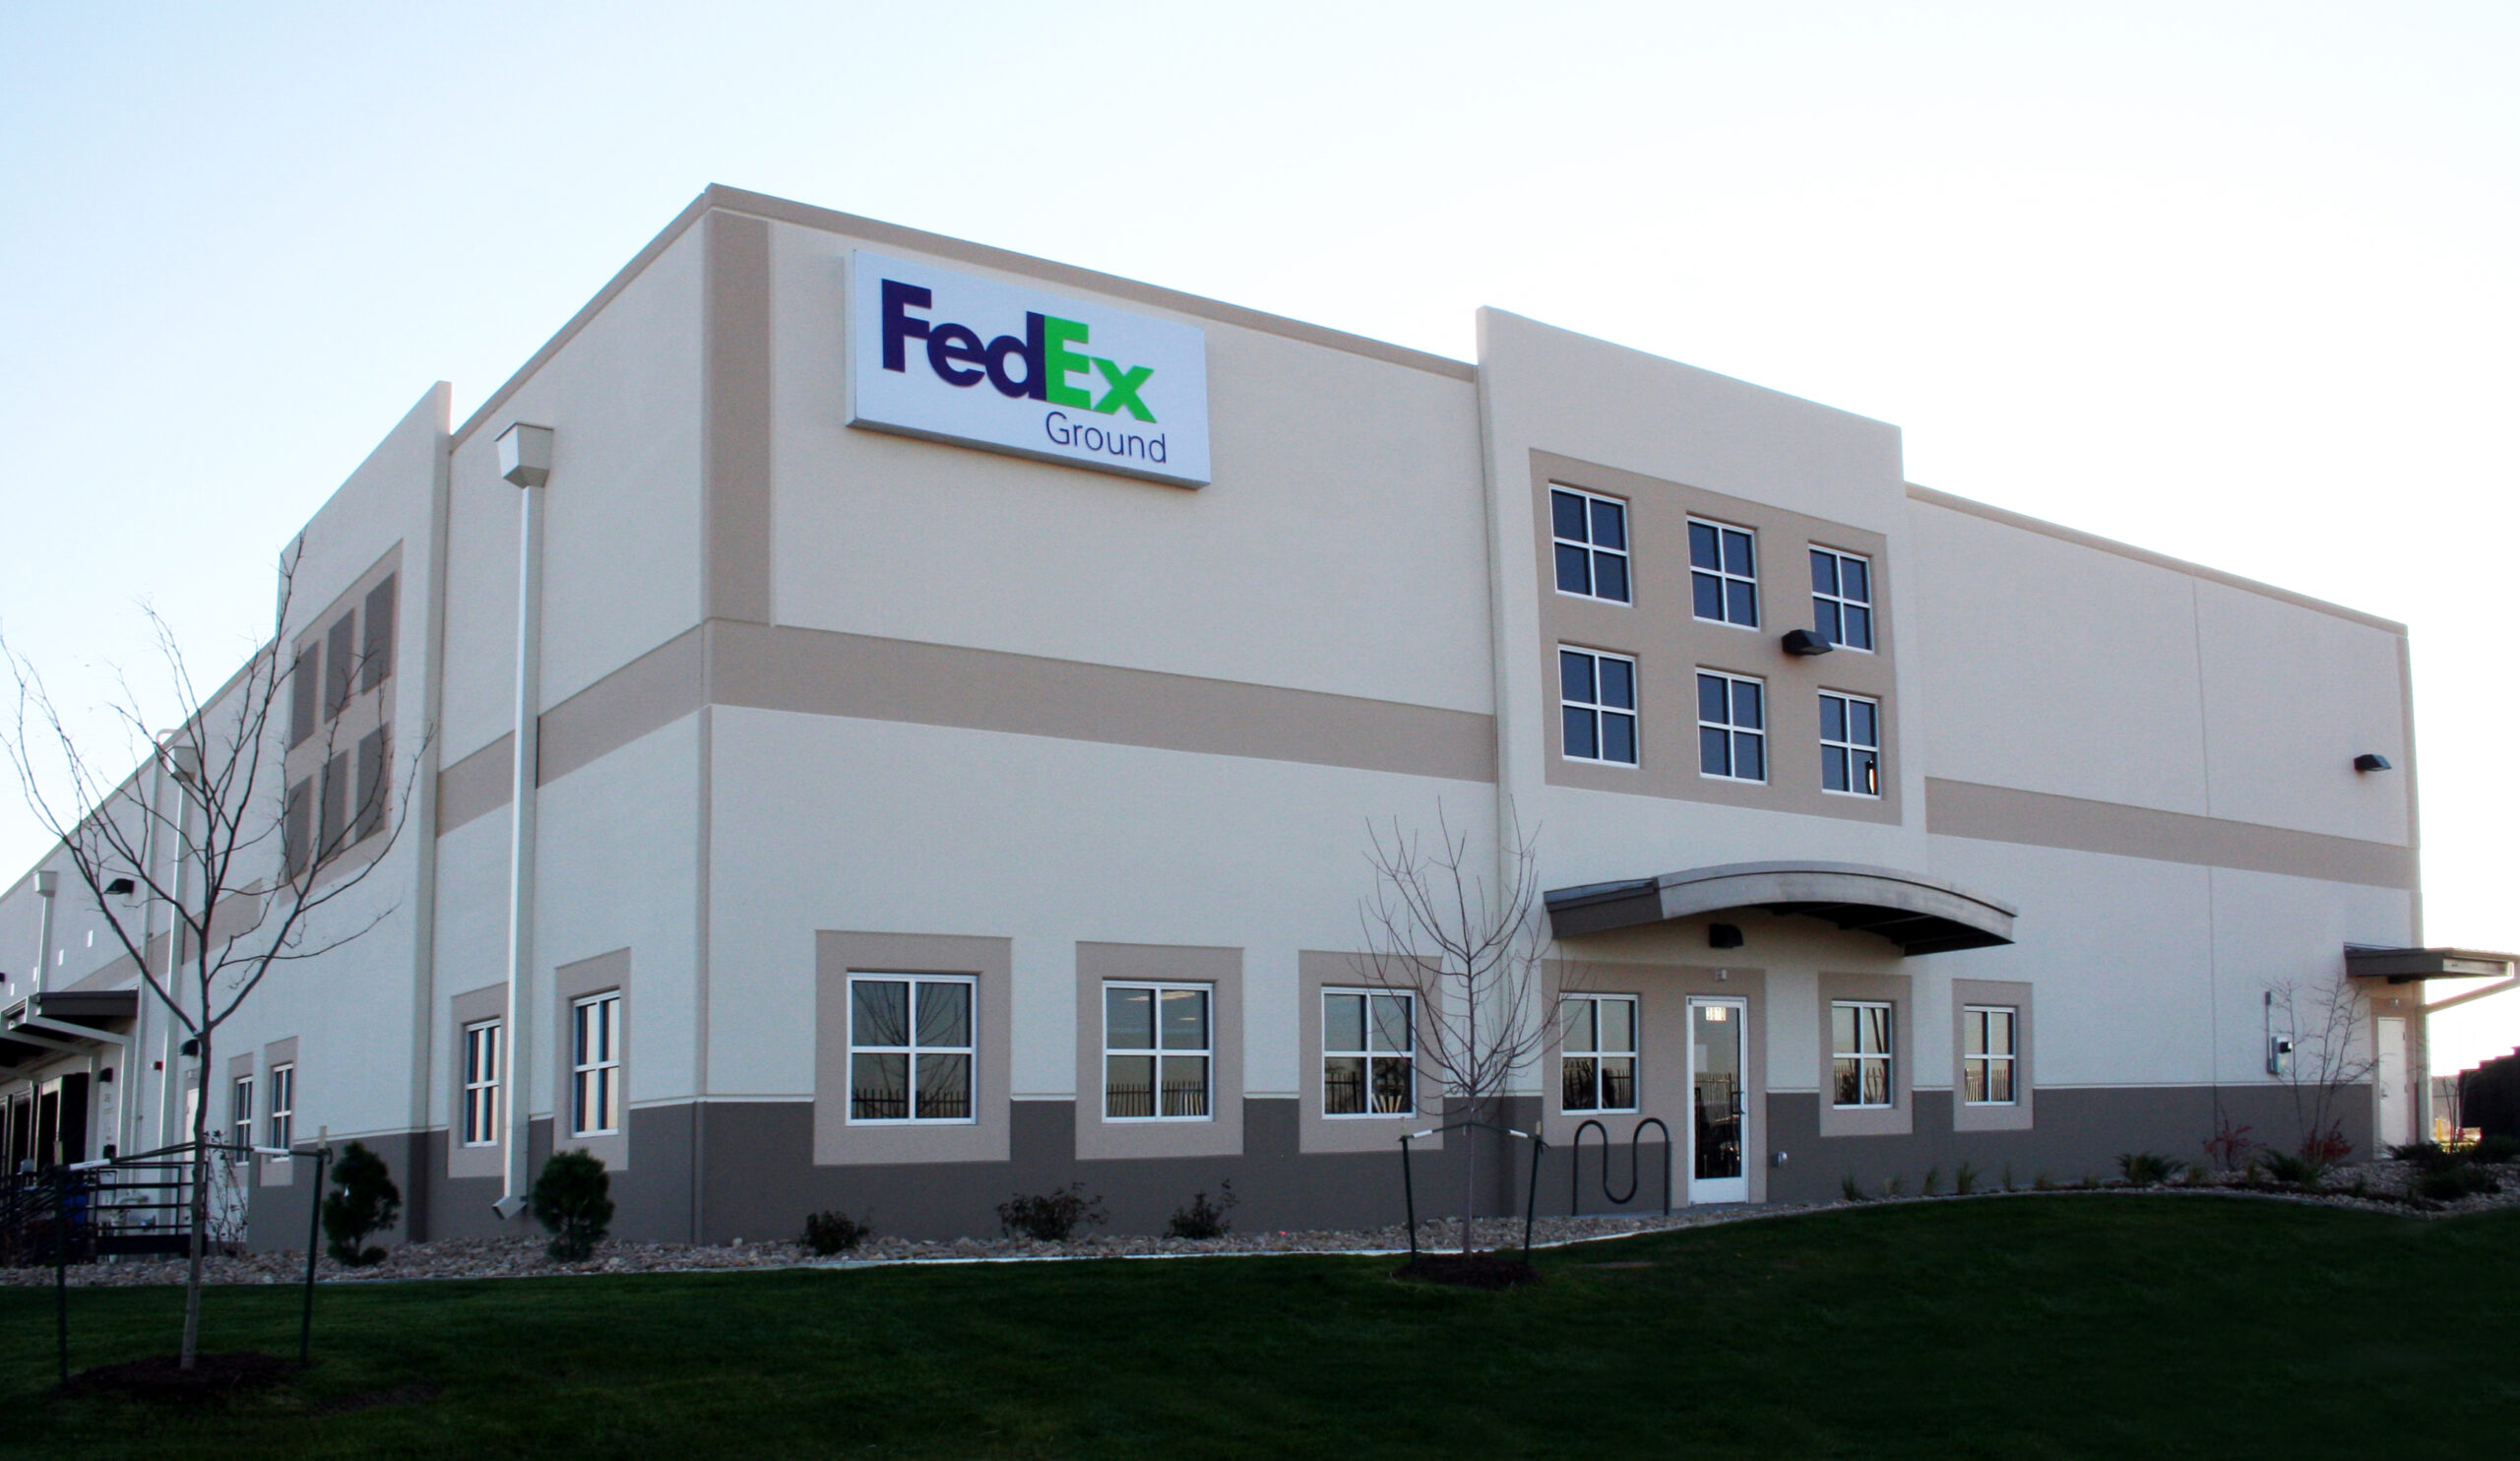 FedEx building exterior